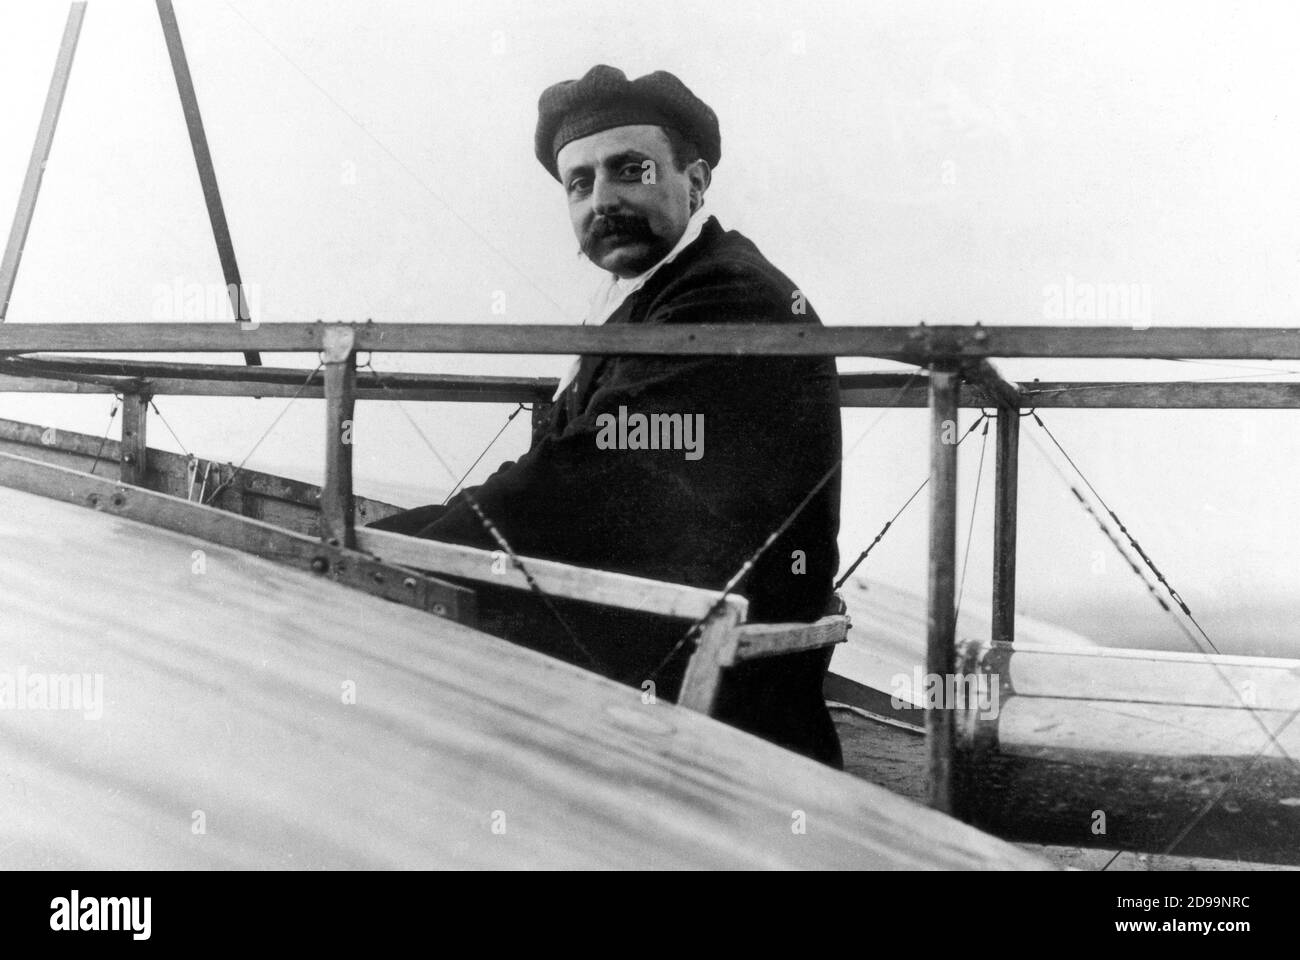 1909 c : l'aviateur français pionier Louis Blériot ( Cambrai 1872 - Paris 1936 ) , avec l'avion BXI a été le premier travolteur de la Manche ( Canale della Manica ) - AEREOPLANO - AVIATORE - AVIAZIONE - avion - aviation - force aérienne - avière - aviateur - bachigi - moustache - chapeau - cappello - pioniere - trasvolatore - record --- Archivio GBB Banque D'Images